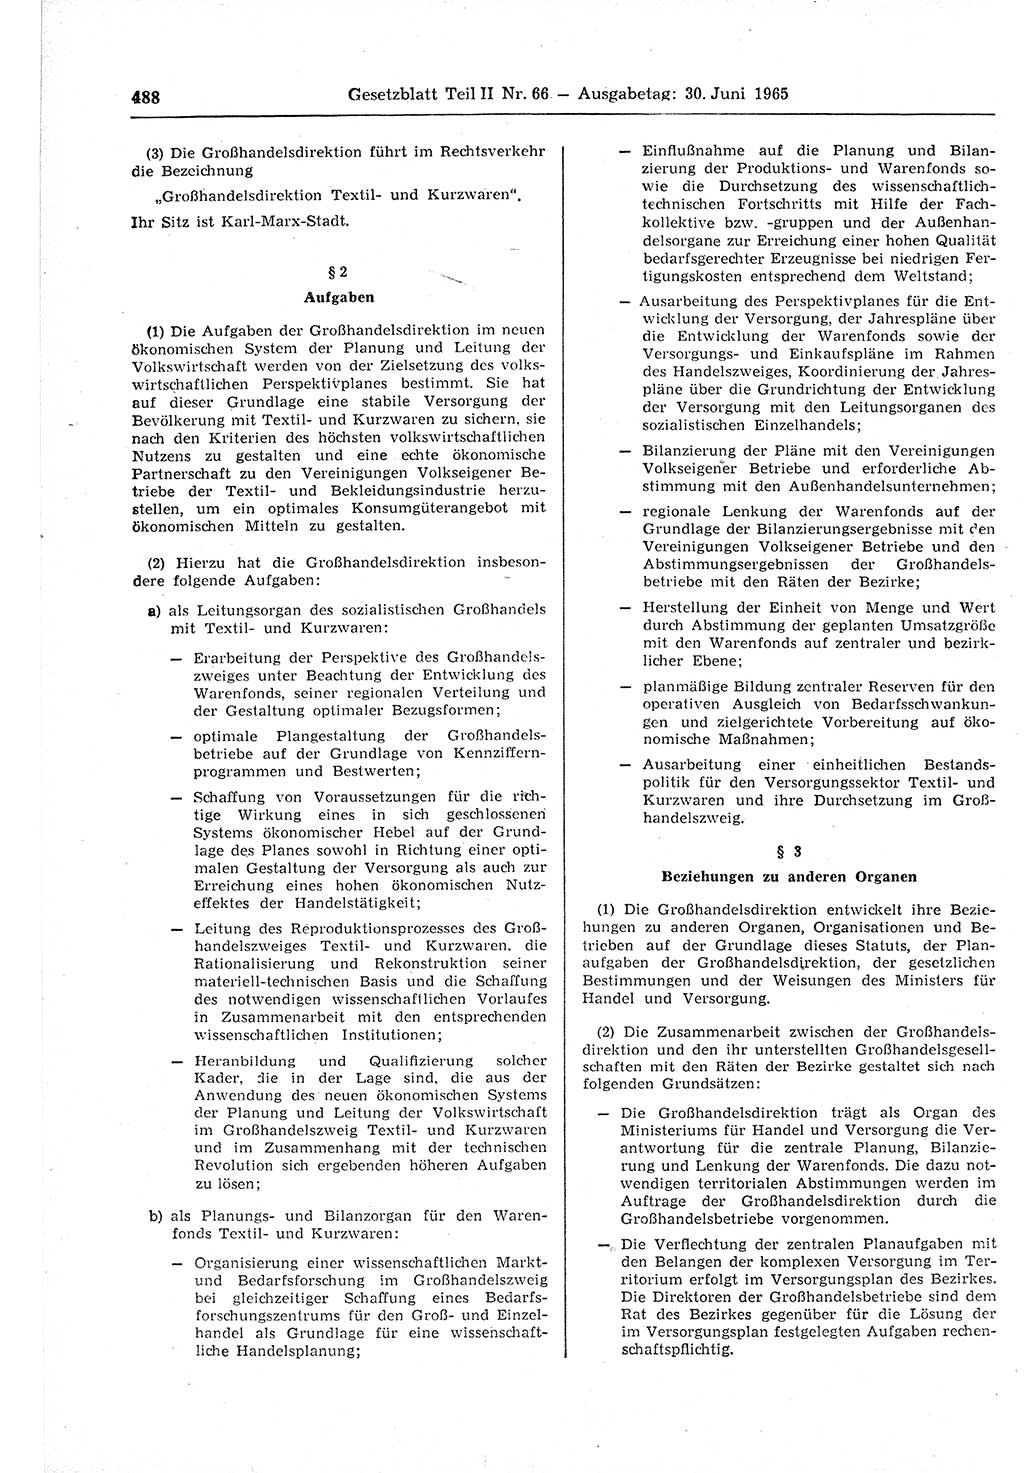 Gesetzblatt (GBl.) der Deutschen Demokratischen Republik (DDR) Teil ⅠⅠ 1965, Seite 488 (GBl. DDR ⅠⅠ 1965, S. 488)